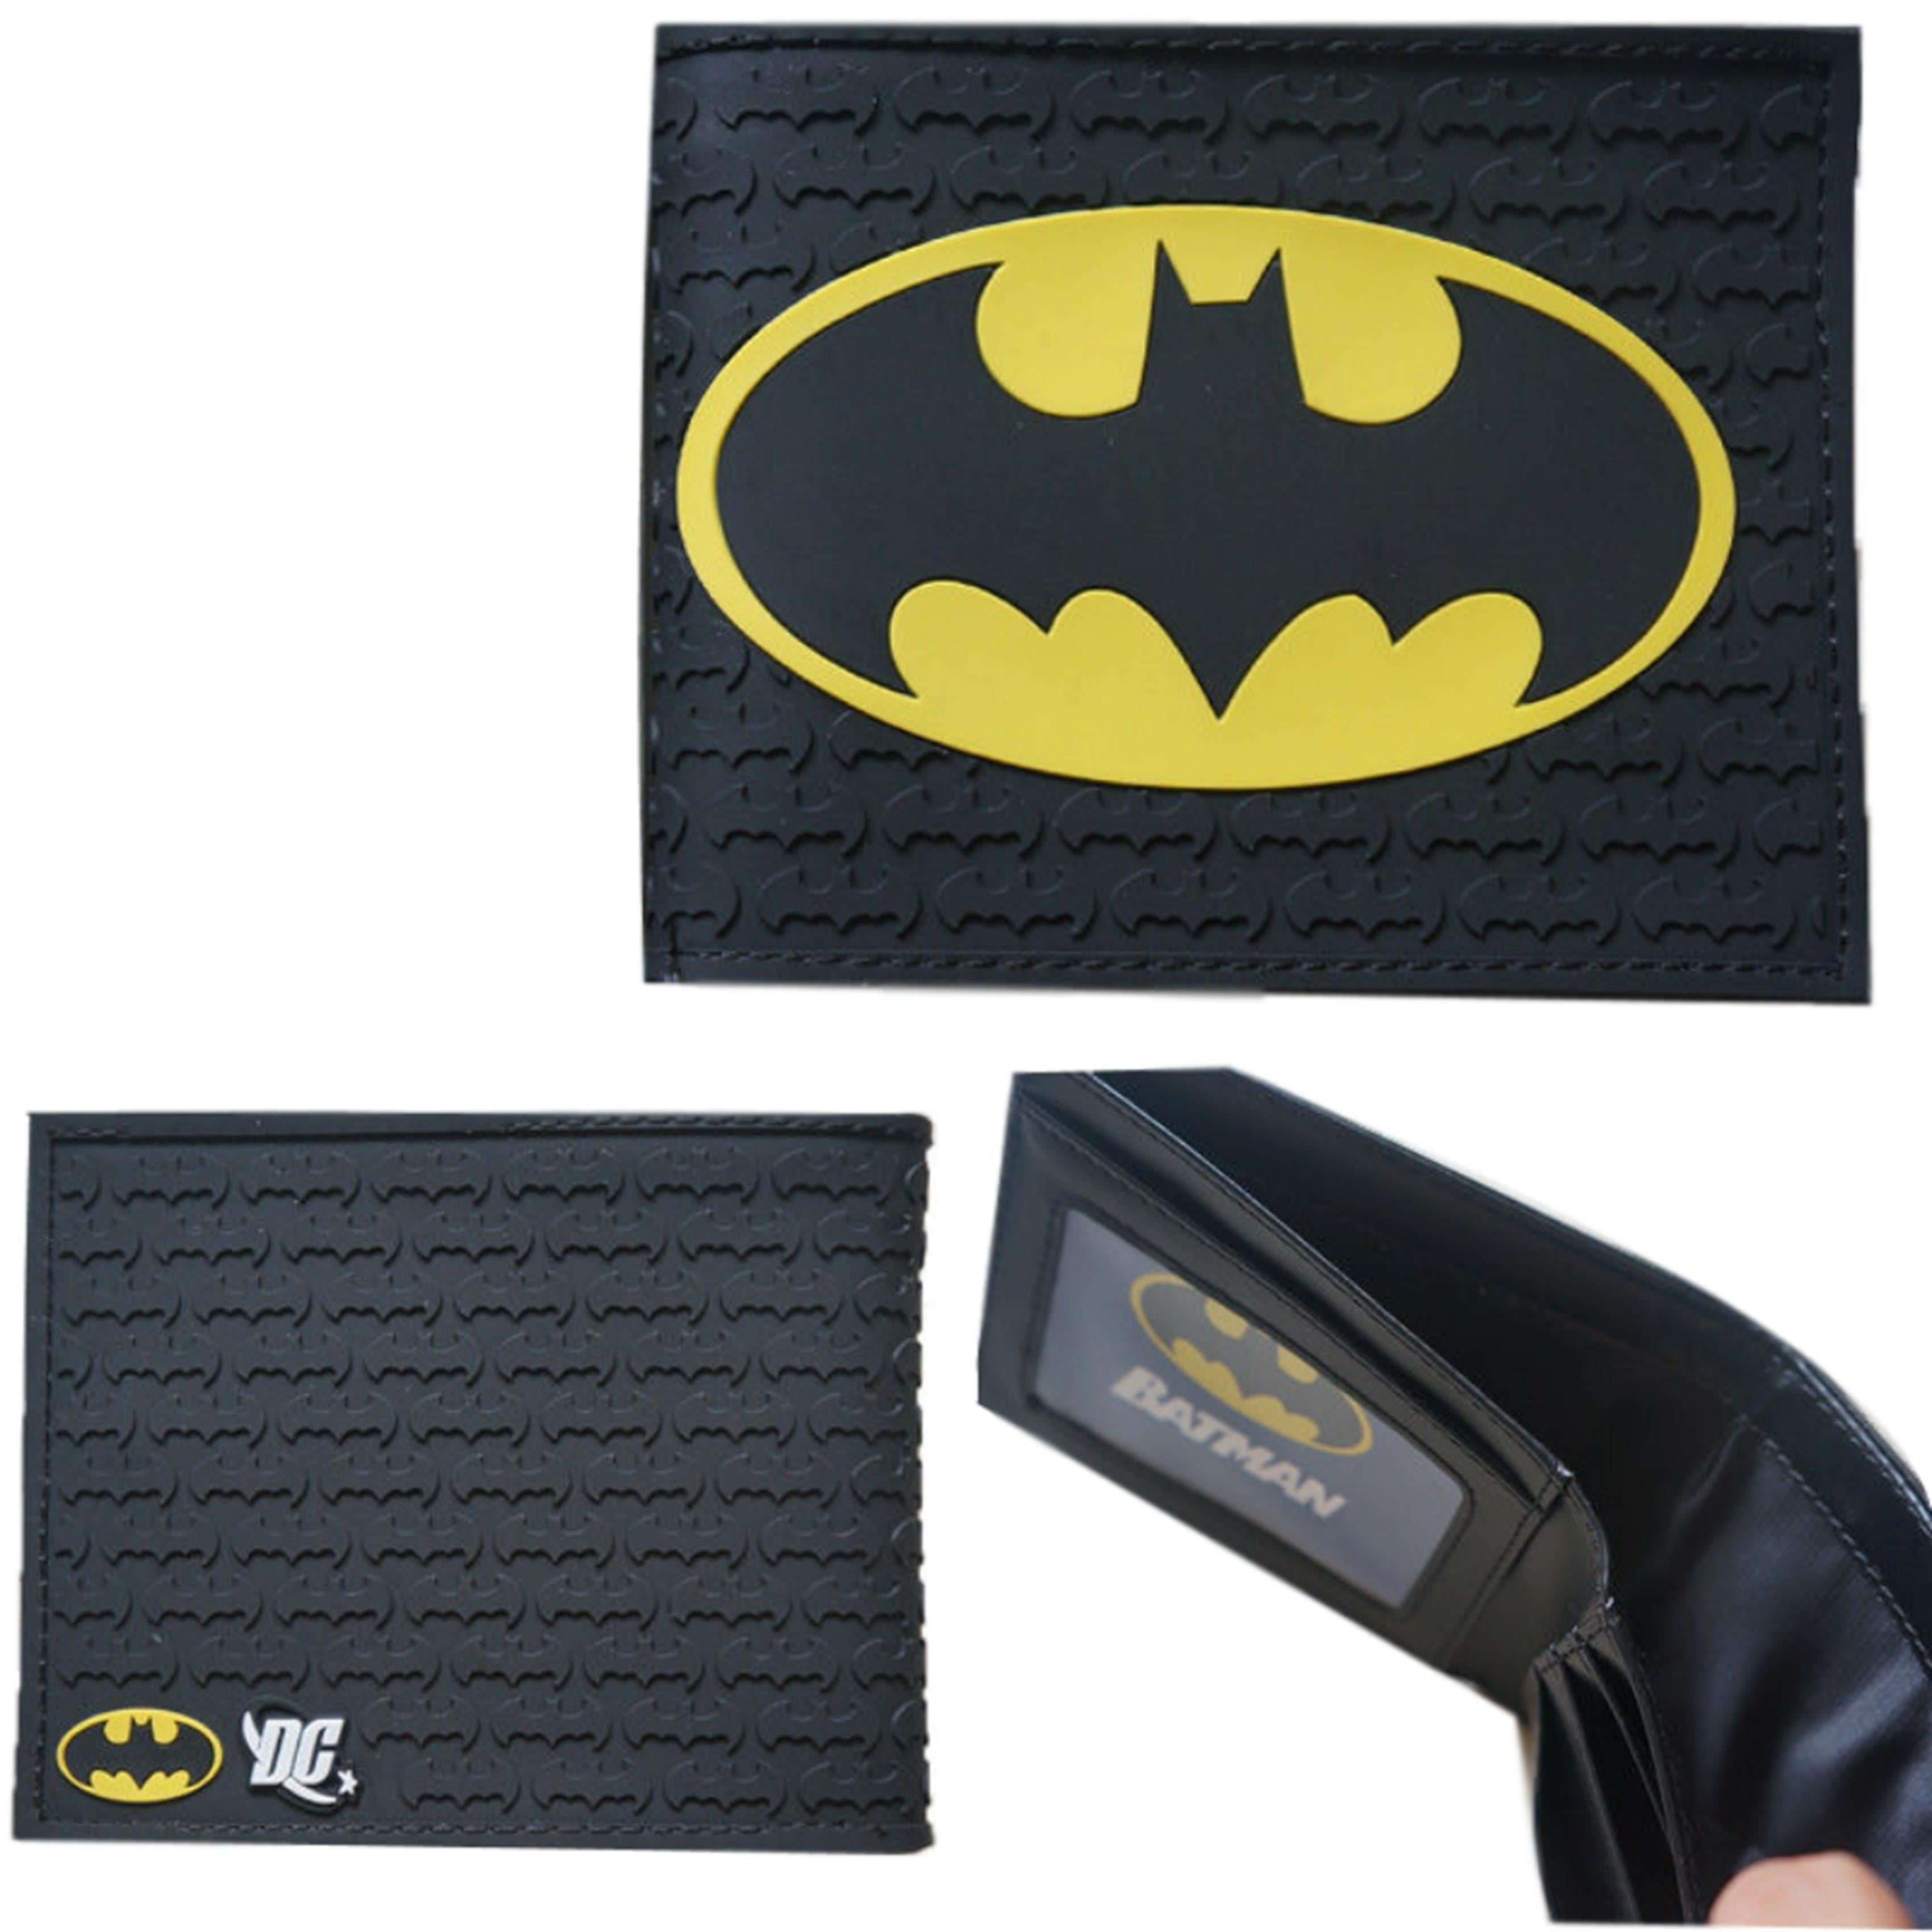 Batman Accessory DC Comics Gift Batman Wallet DC Comics Accessories Batman Gift